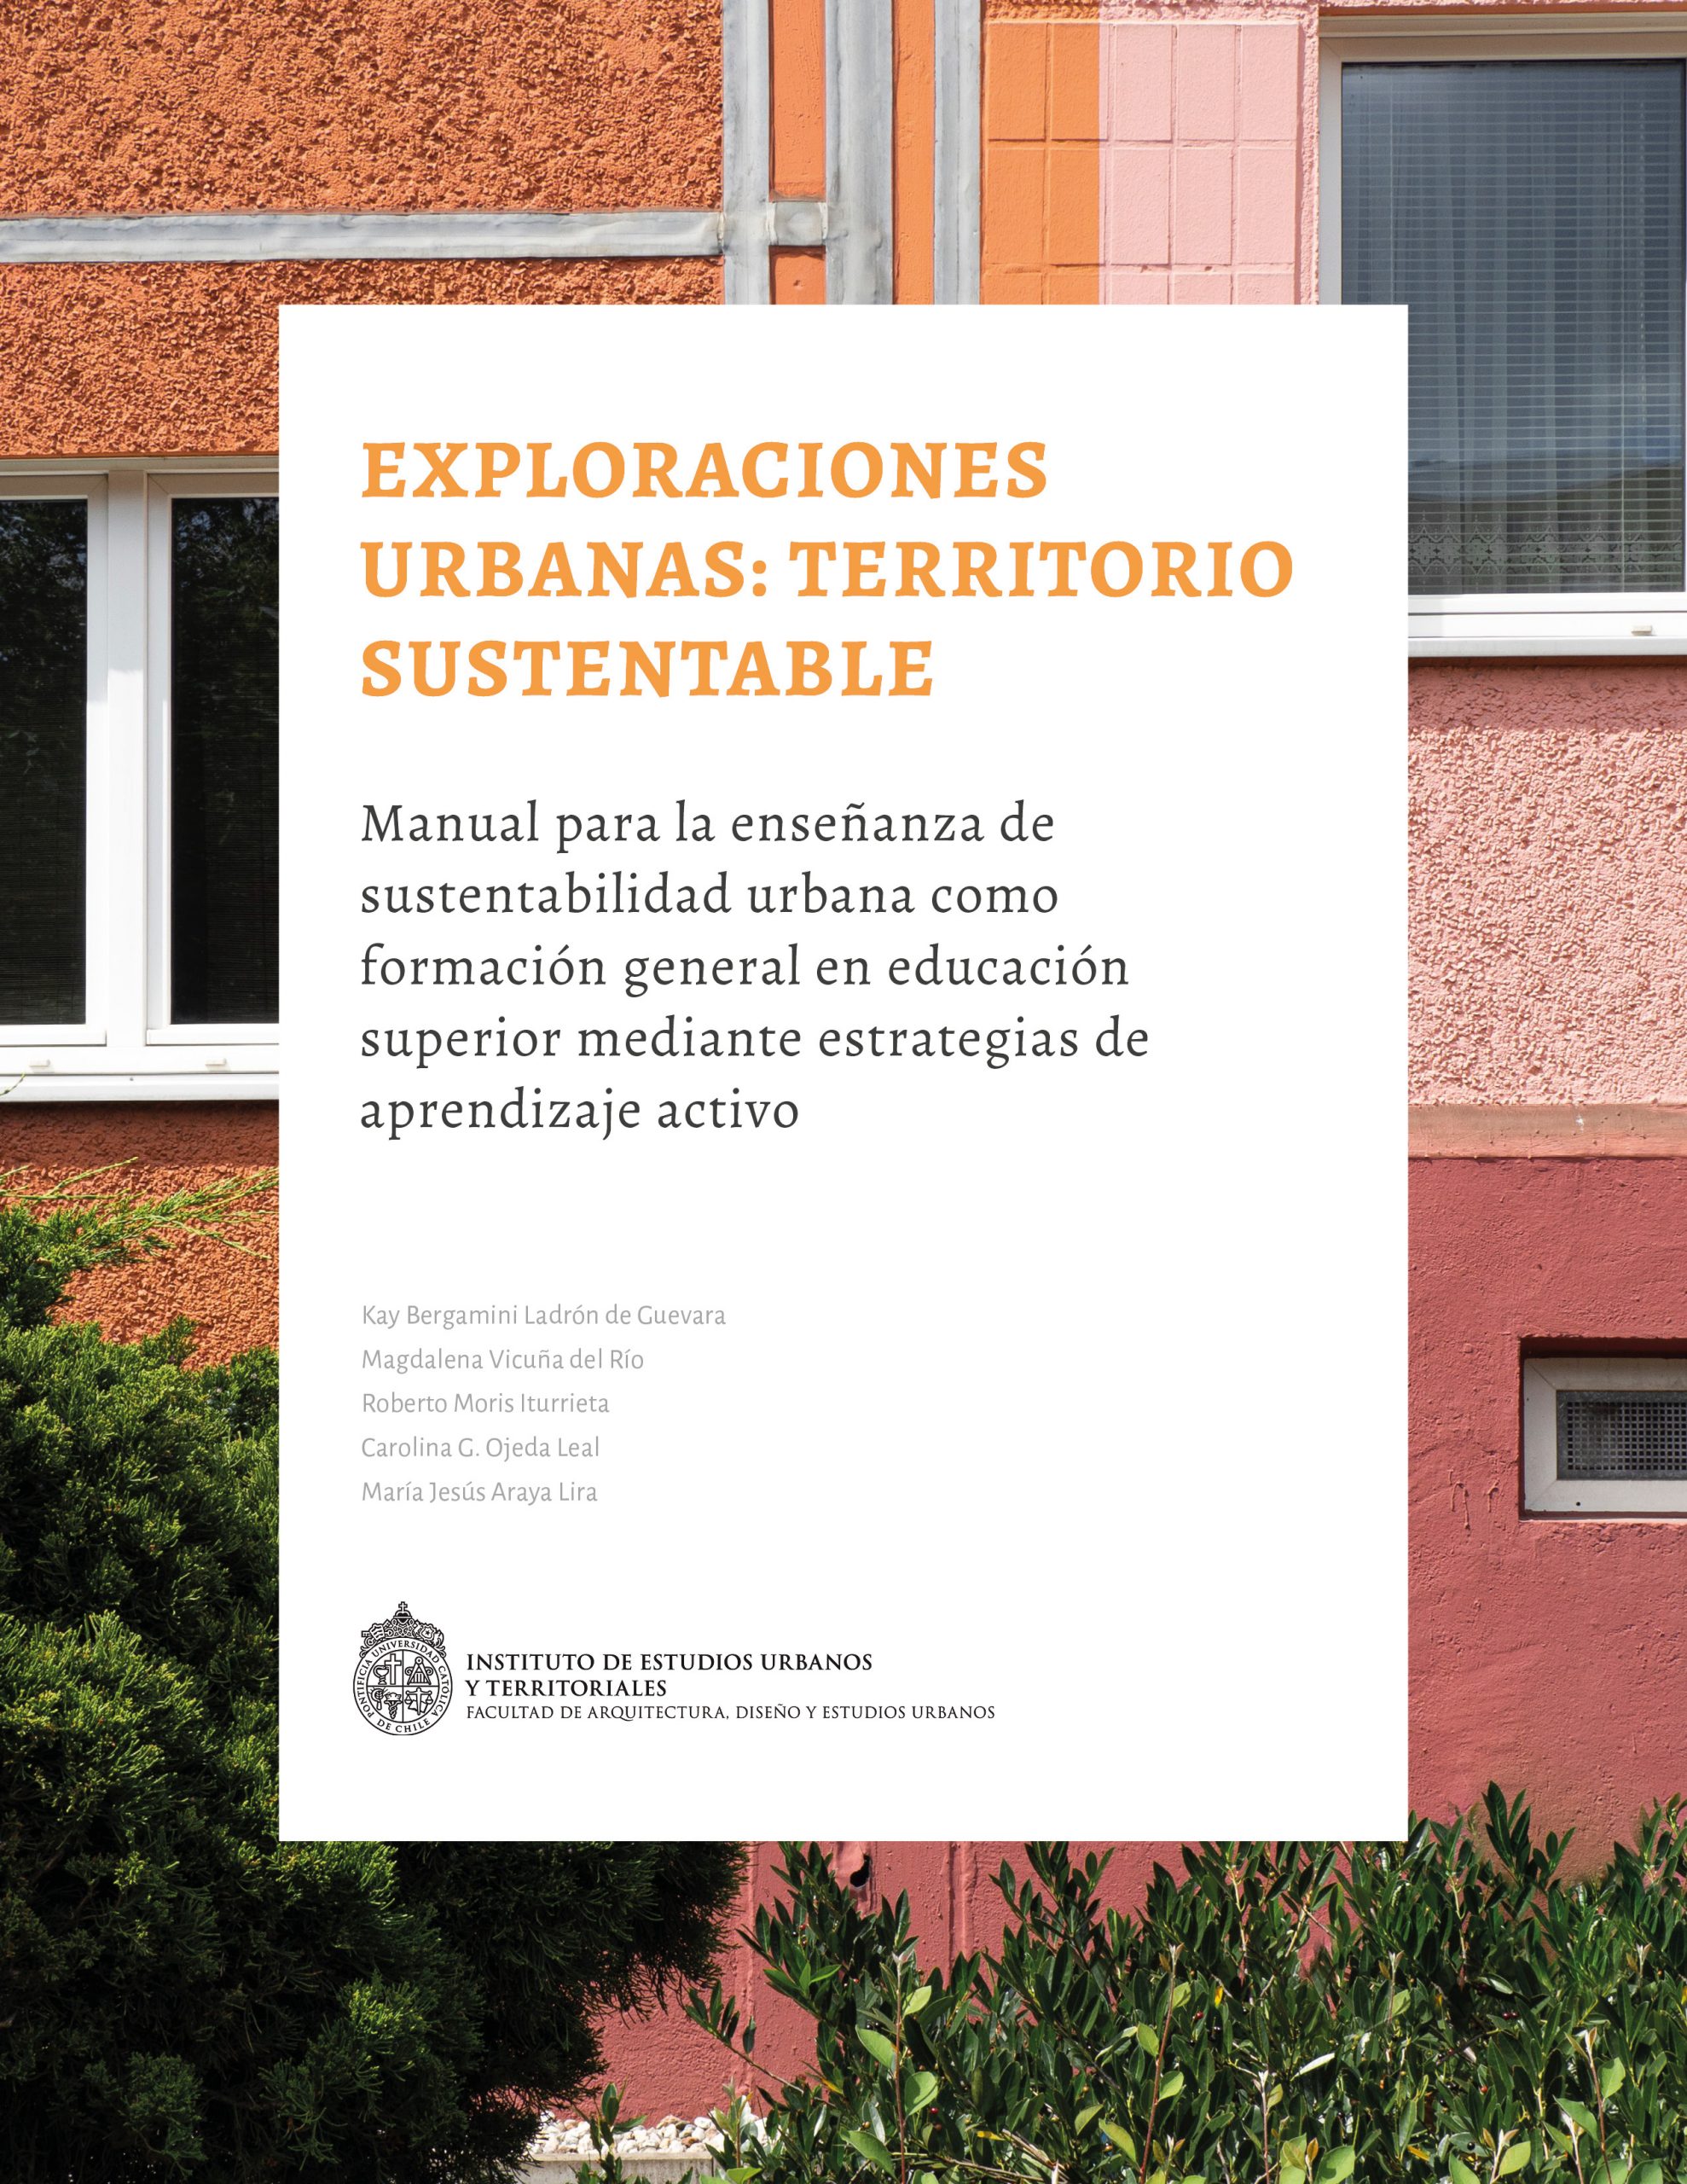 Lanzamiento del Libro «Exploraciones Urbanas: Territorio Sustentable. Manual para la enseñanza de sustentabilidad urbana como formación general en educación superior mediante estrategias de aprendizaje activo»